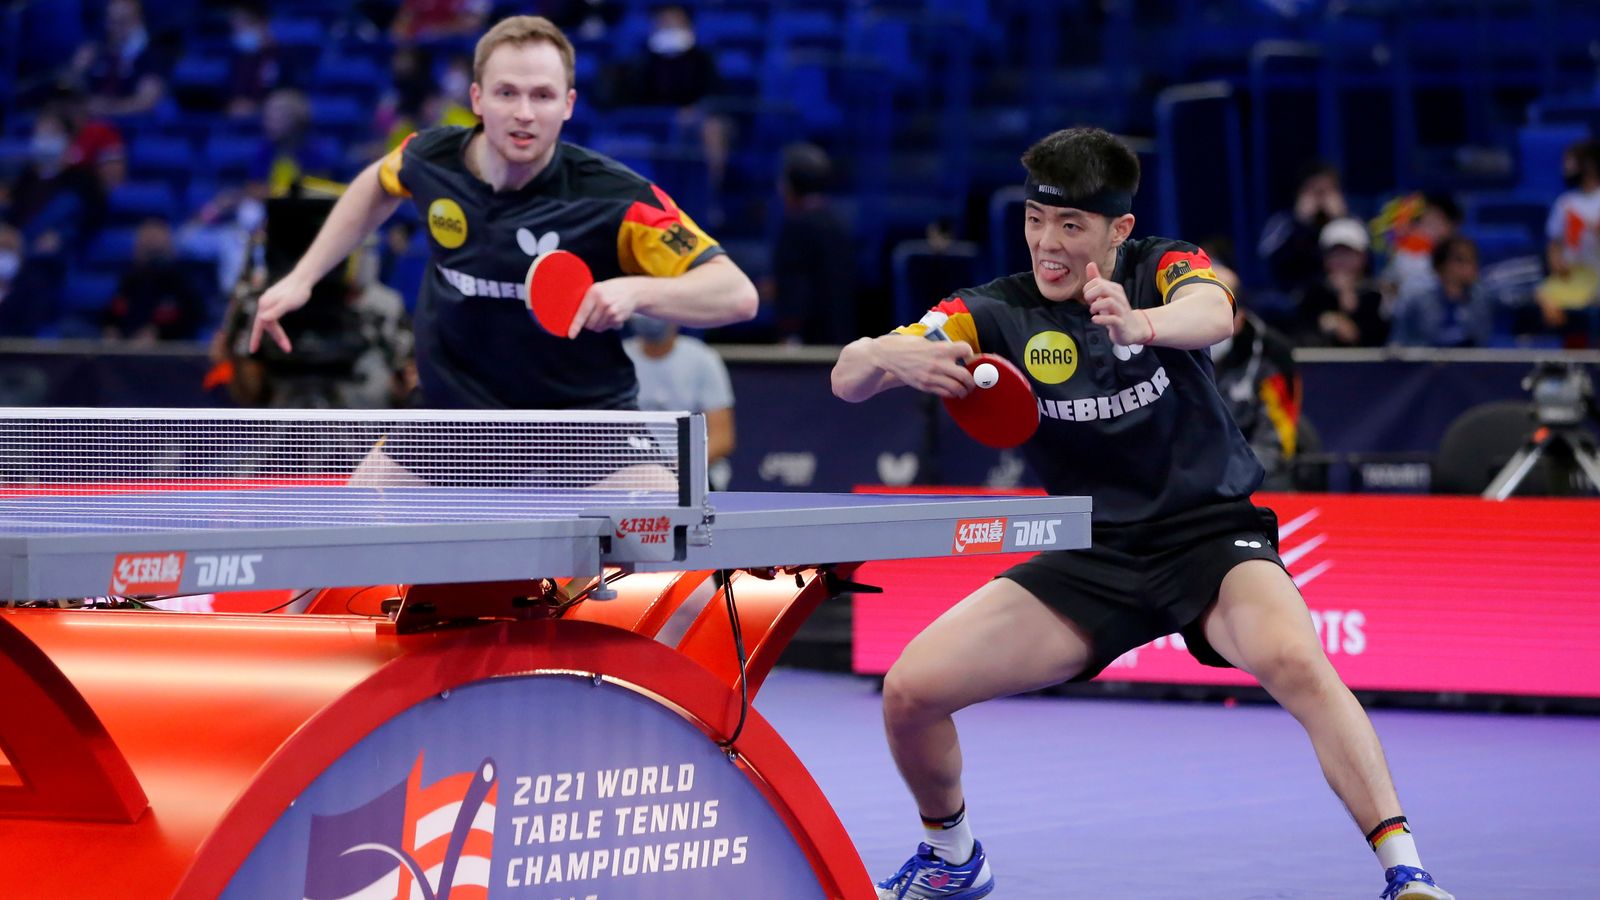 Tischtennis News Benedikt Duda and Dang Qiu verpassen WM-Sensation Mehr Sport News Sky Sport